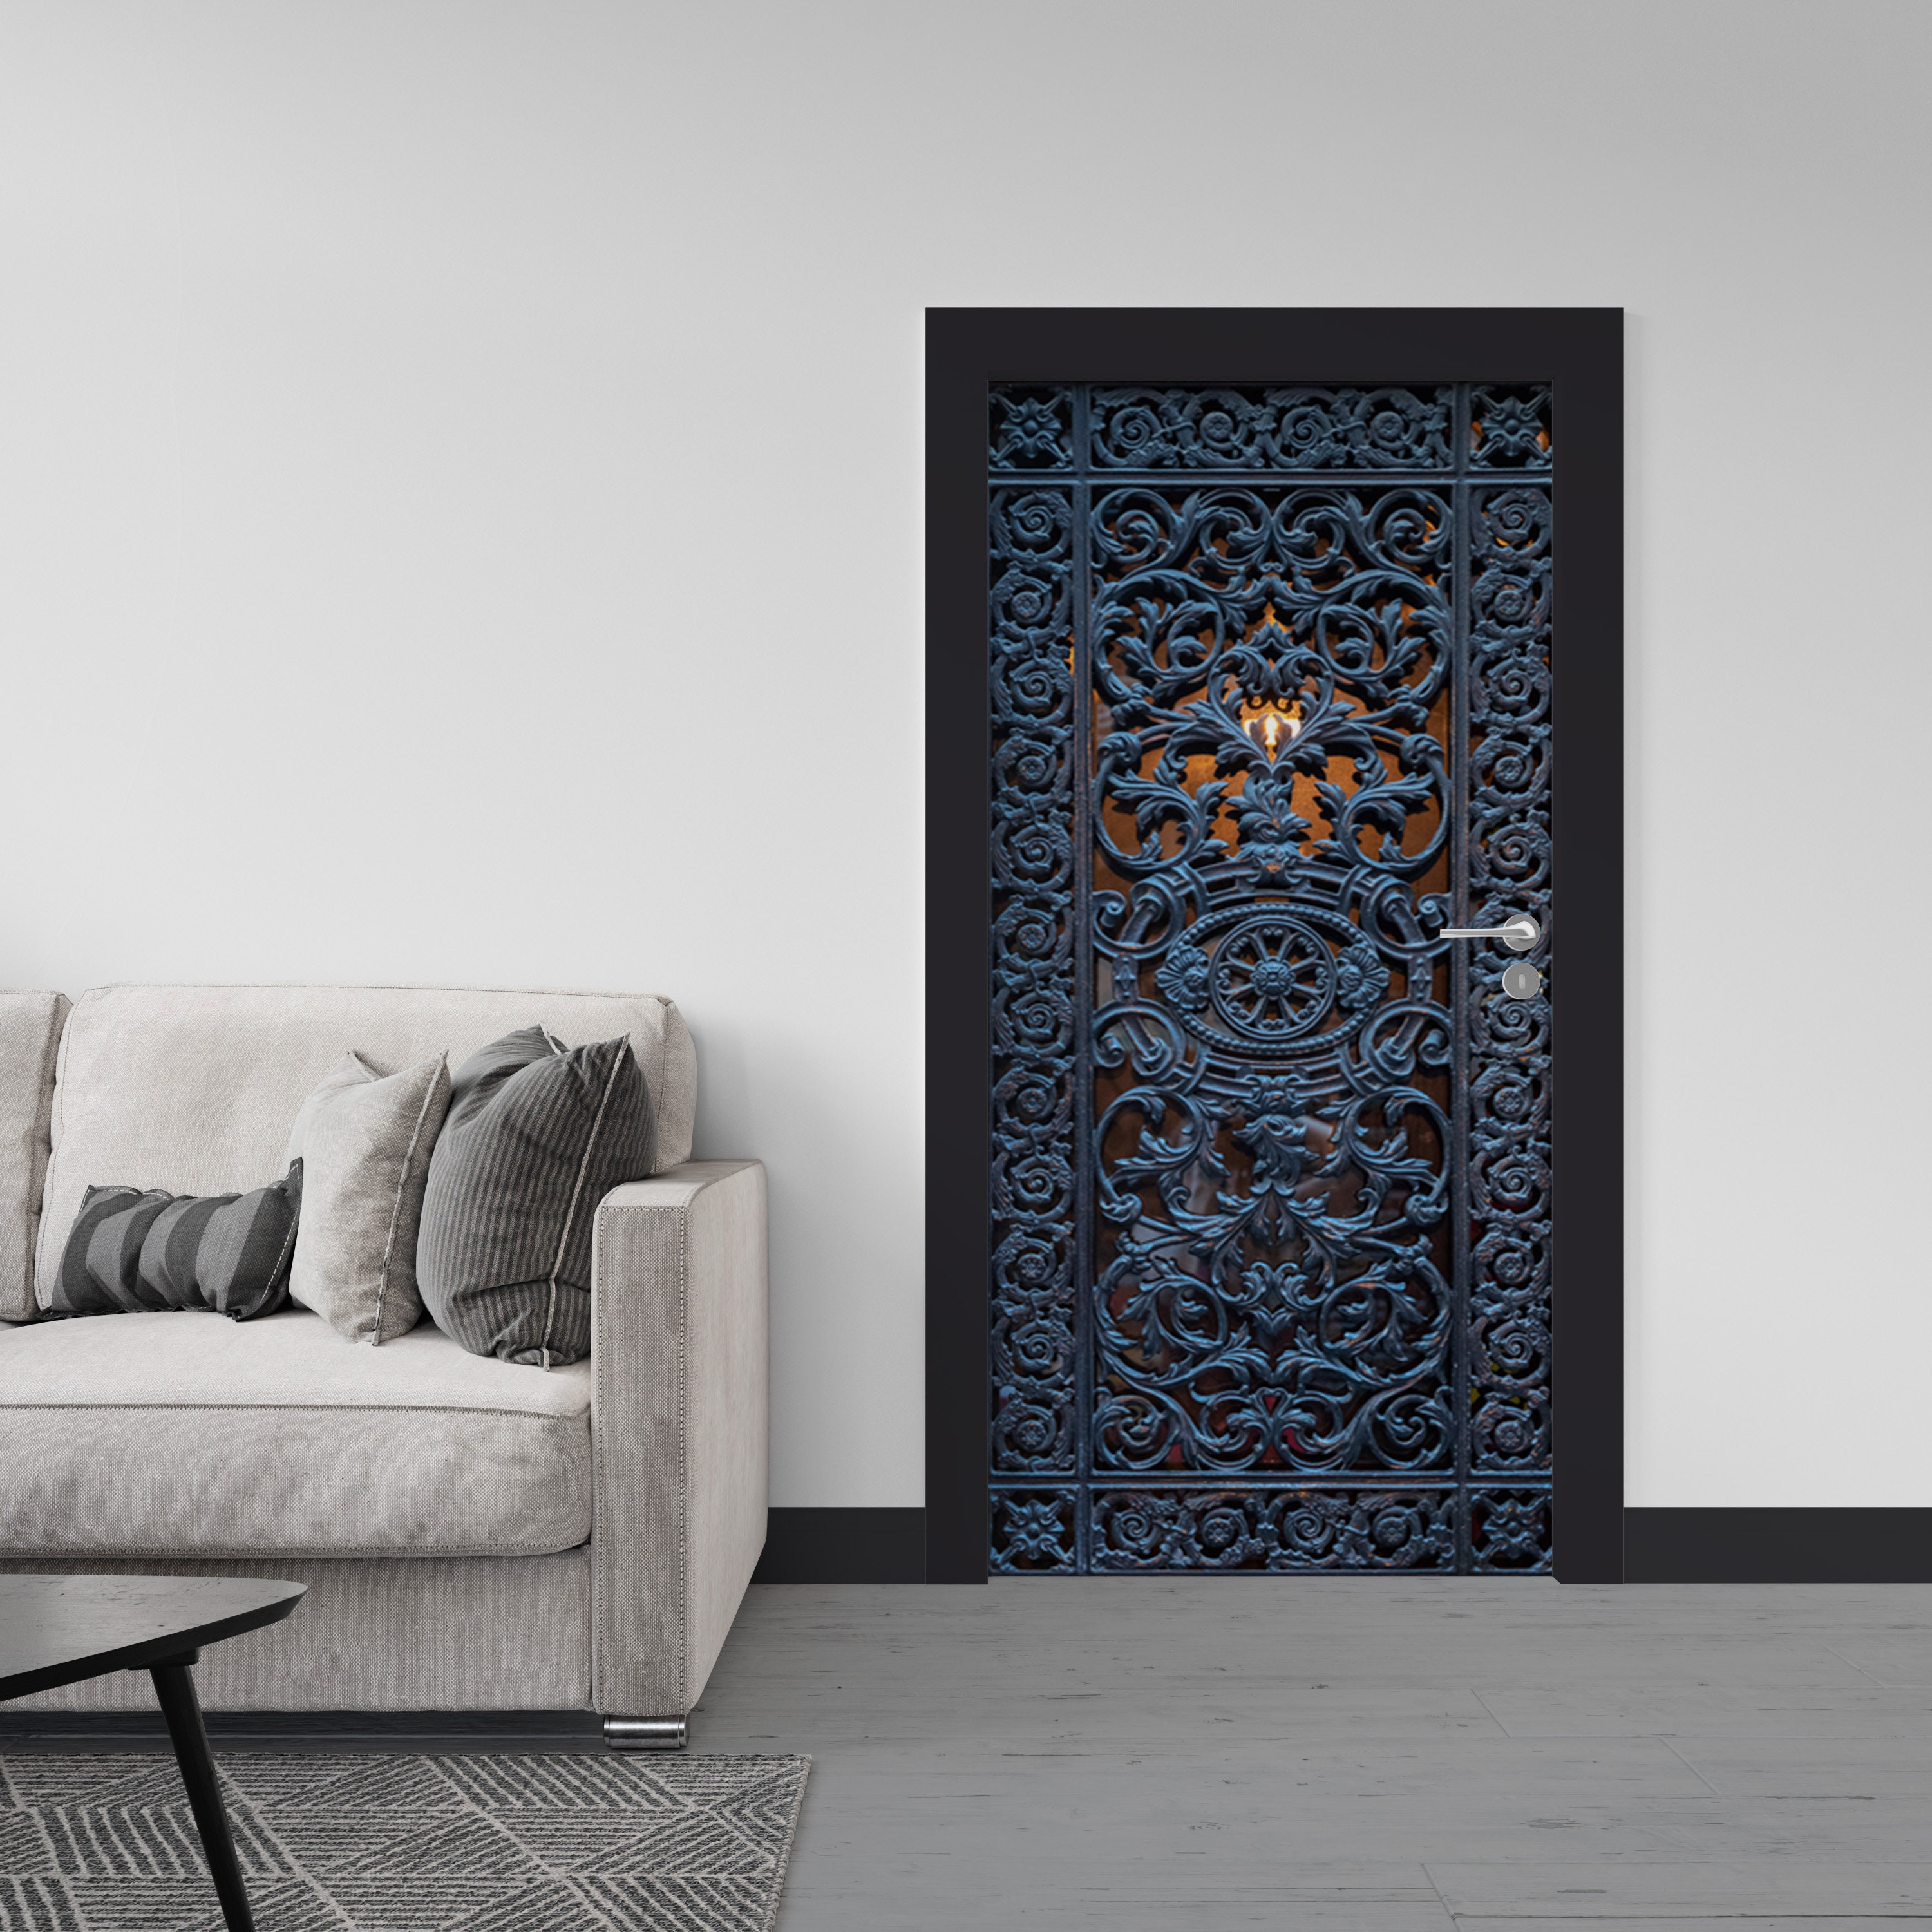 Door Wallpaper Designs for an Elegant Look